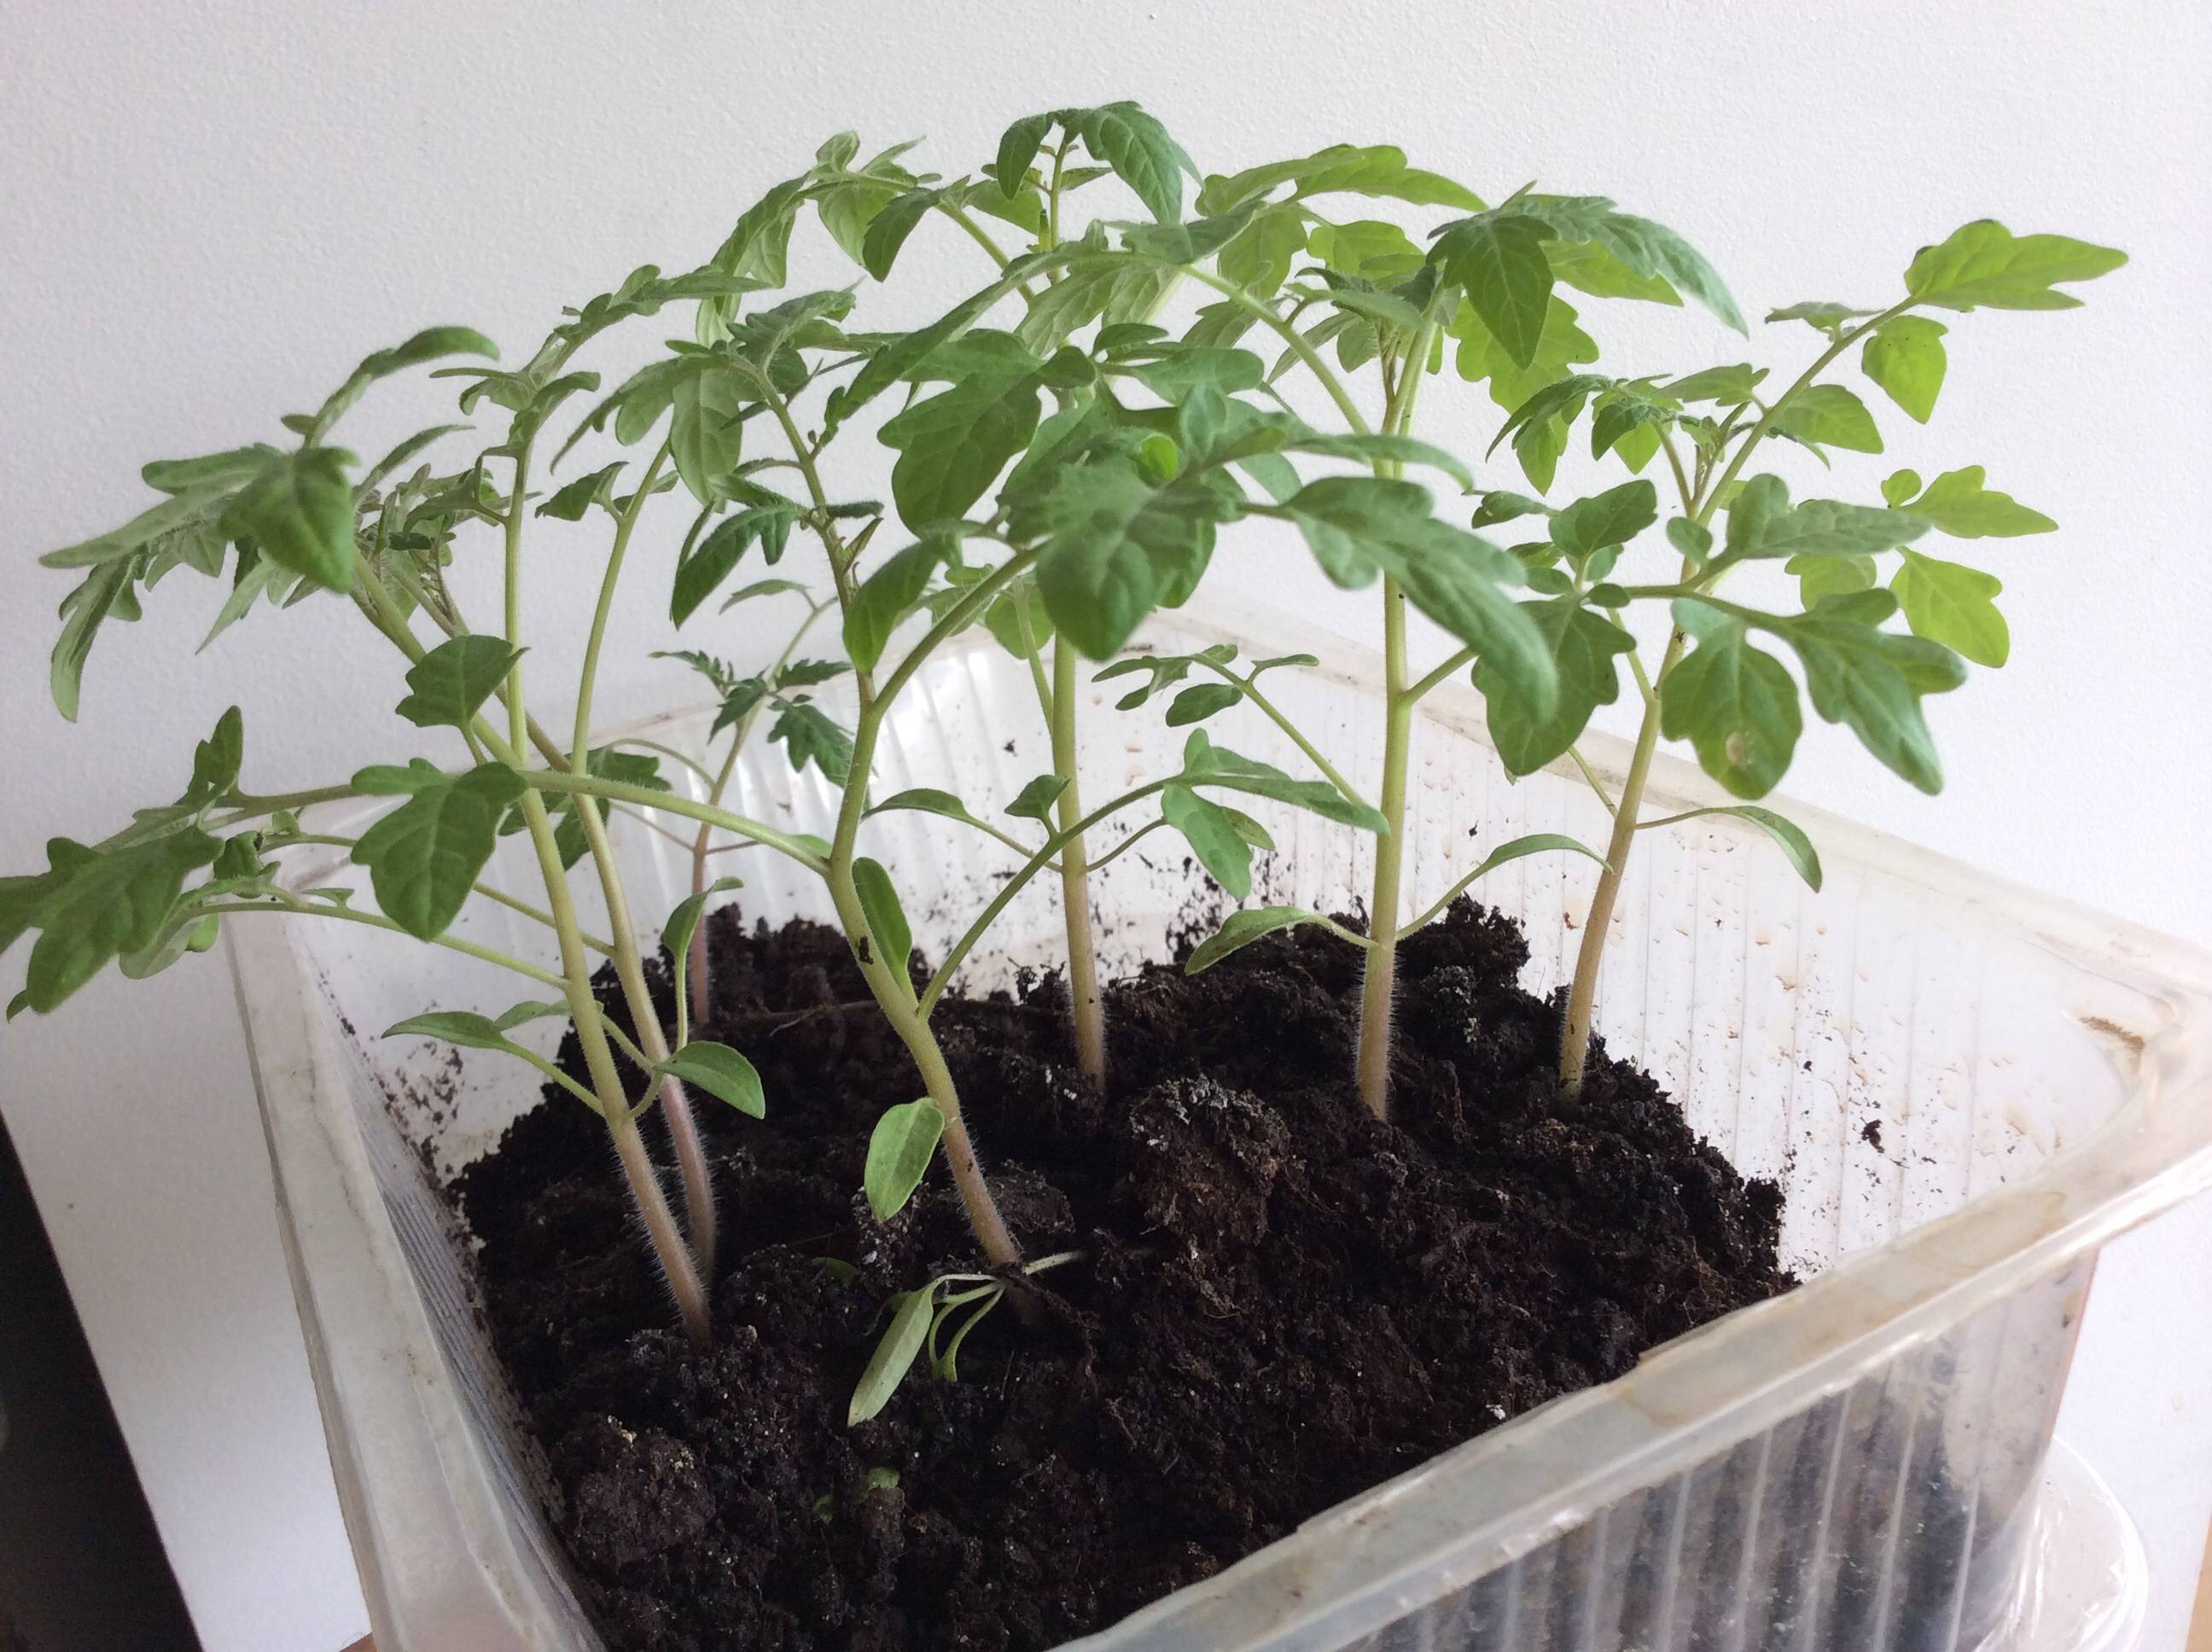 Как посадить помидоры на рассаду правильно дома на подоконнике с фото и видео